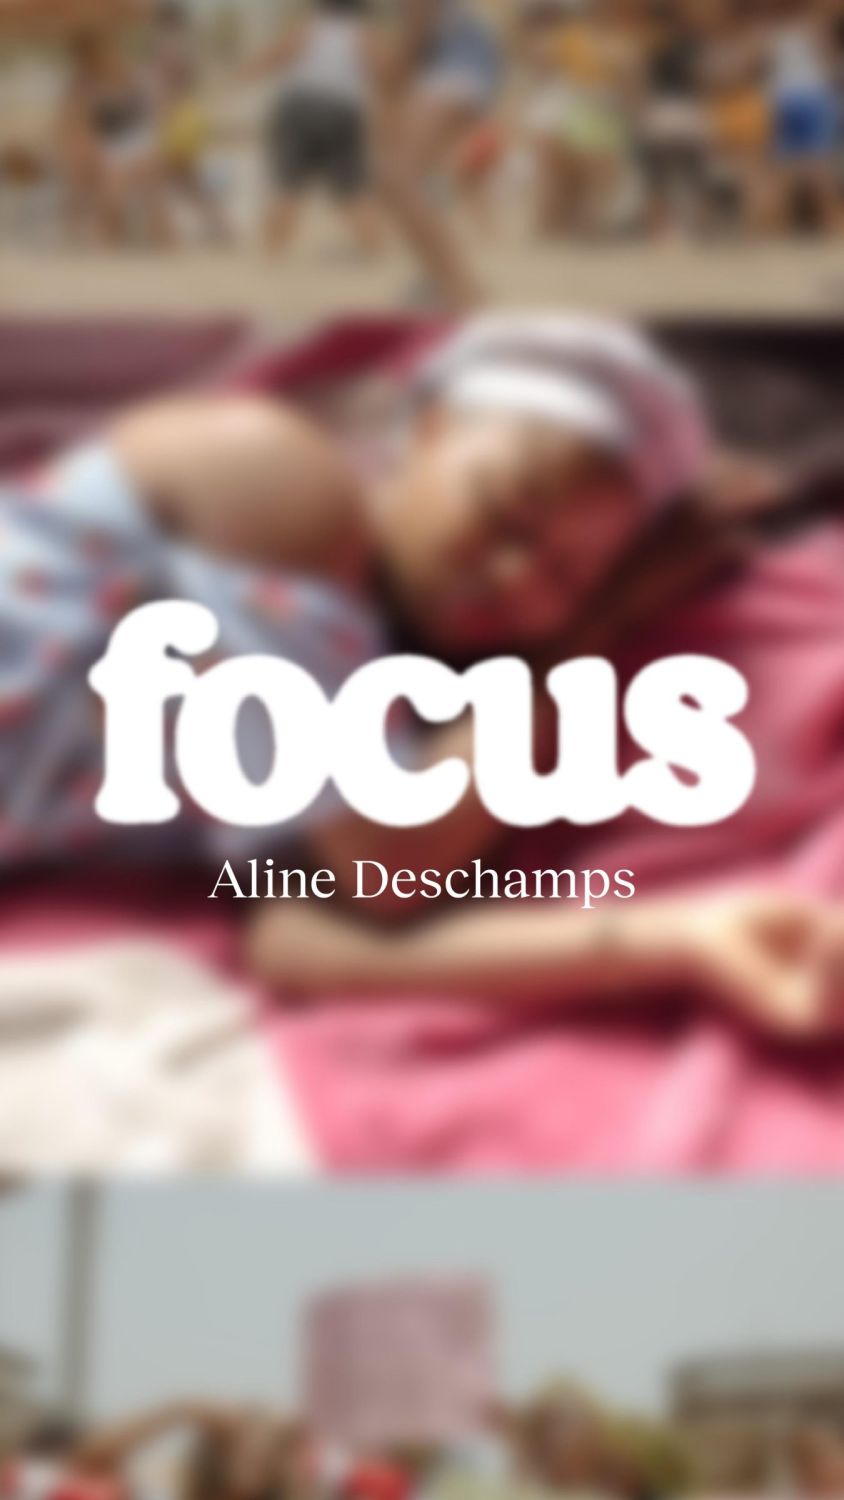 Focus #46 : Les rescapées d’esclavage moderne par Aline Deschamps